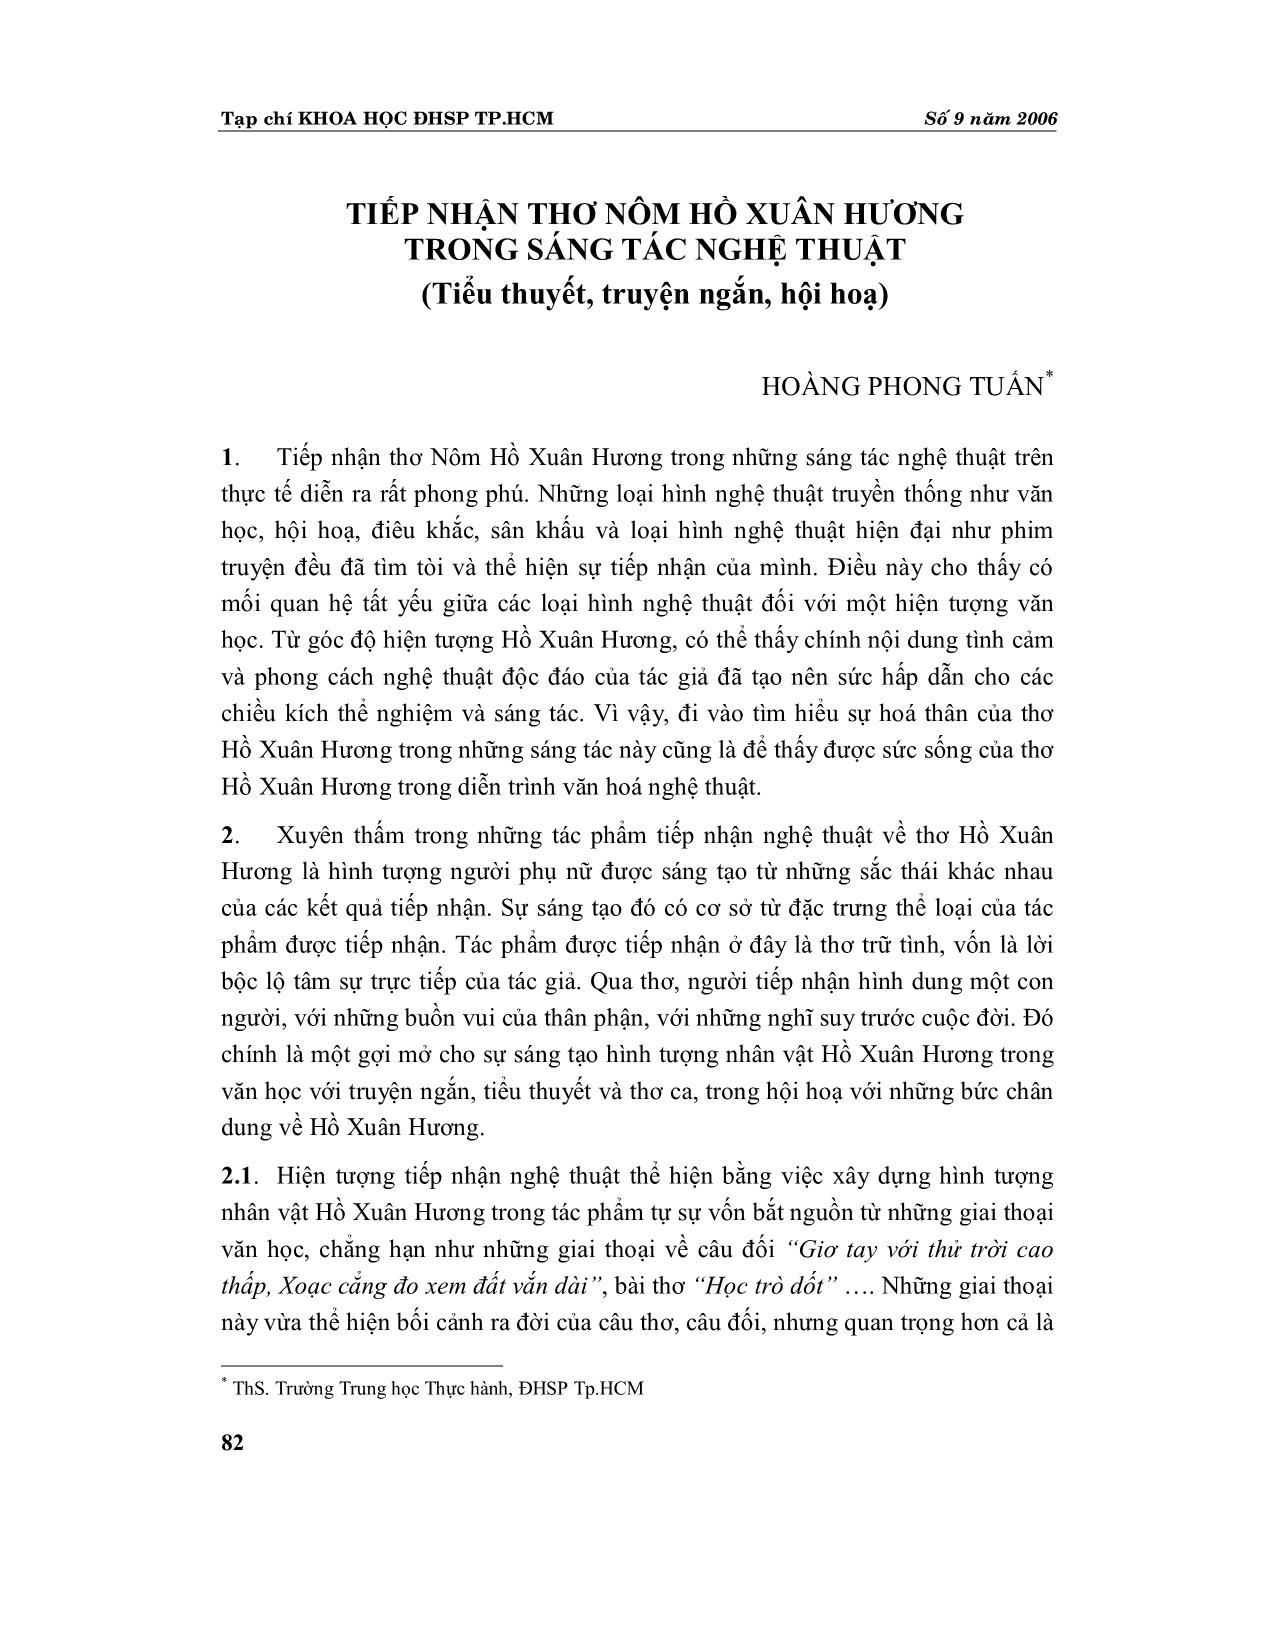 Tiếp nhận thơ Nôm Hồ Xuân Hương trong sáng tác nghệ thuật (Tiểu thuyết, truyện ngắn, hội hoạ) trang 1